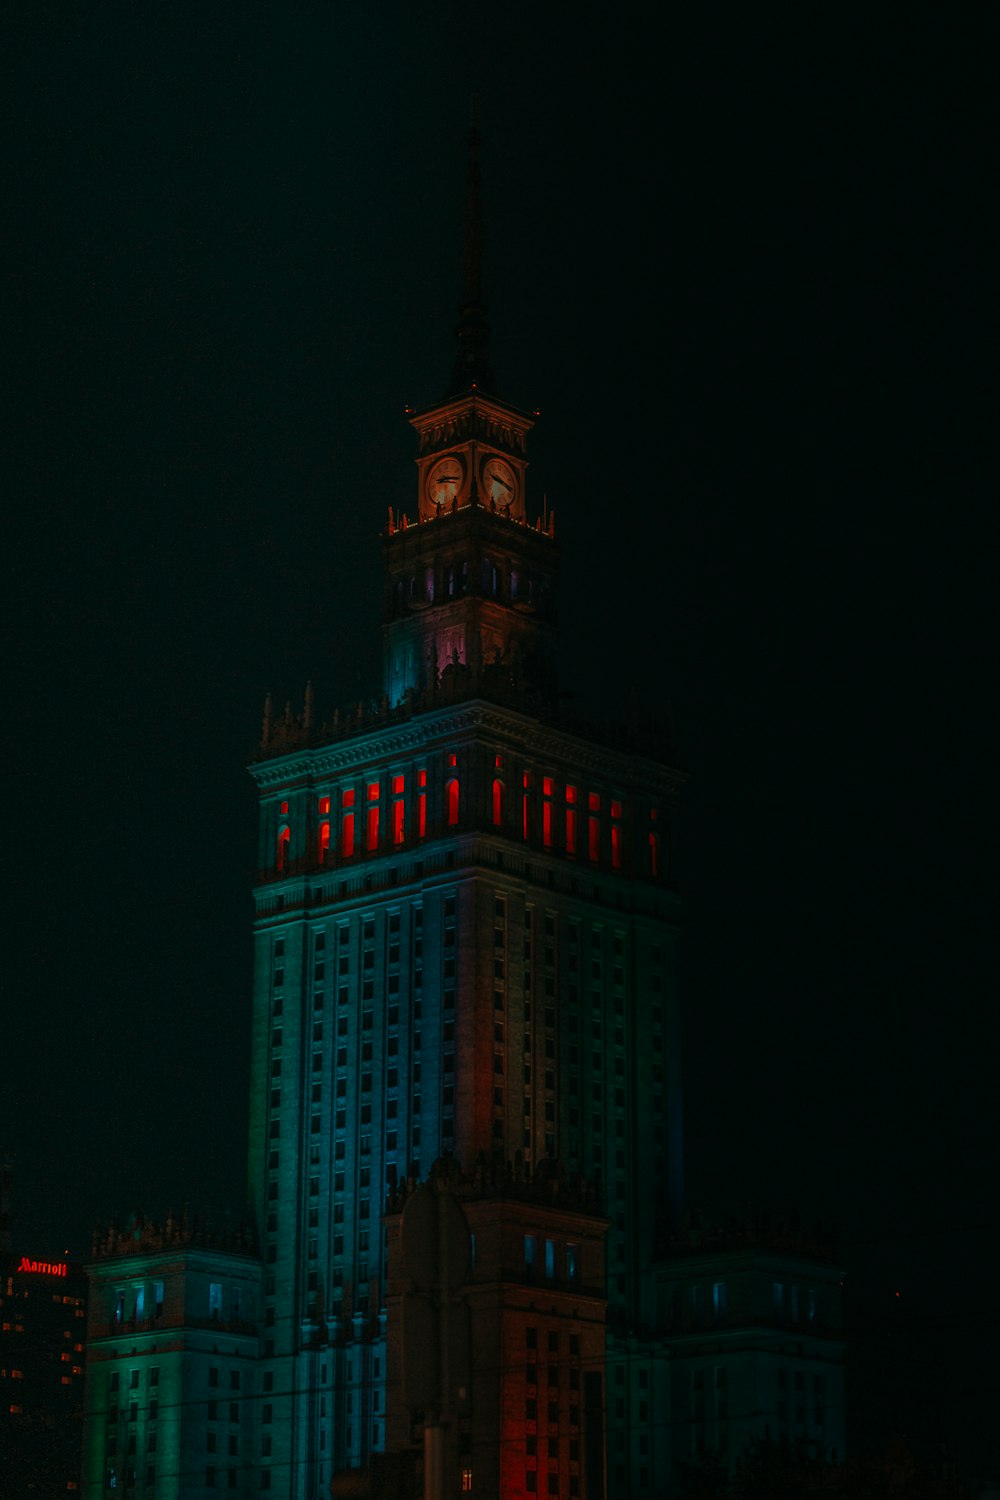 Un edificio alto con una torre del reloj iluminada por la noche